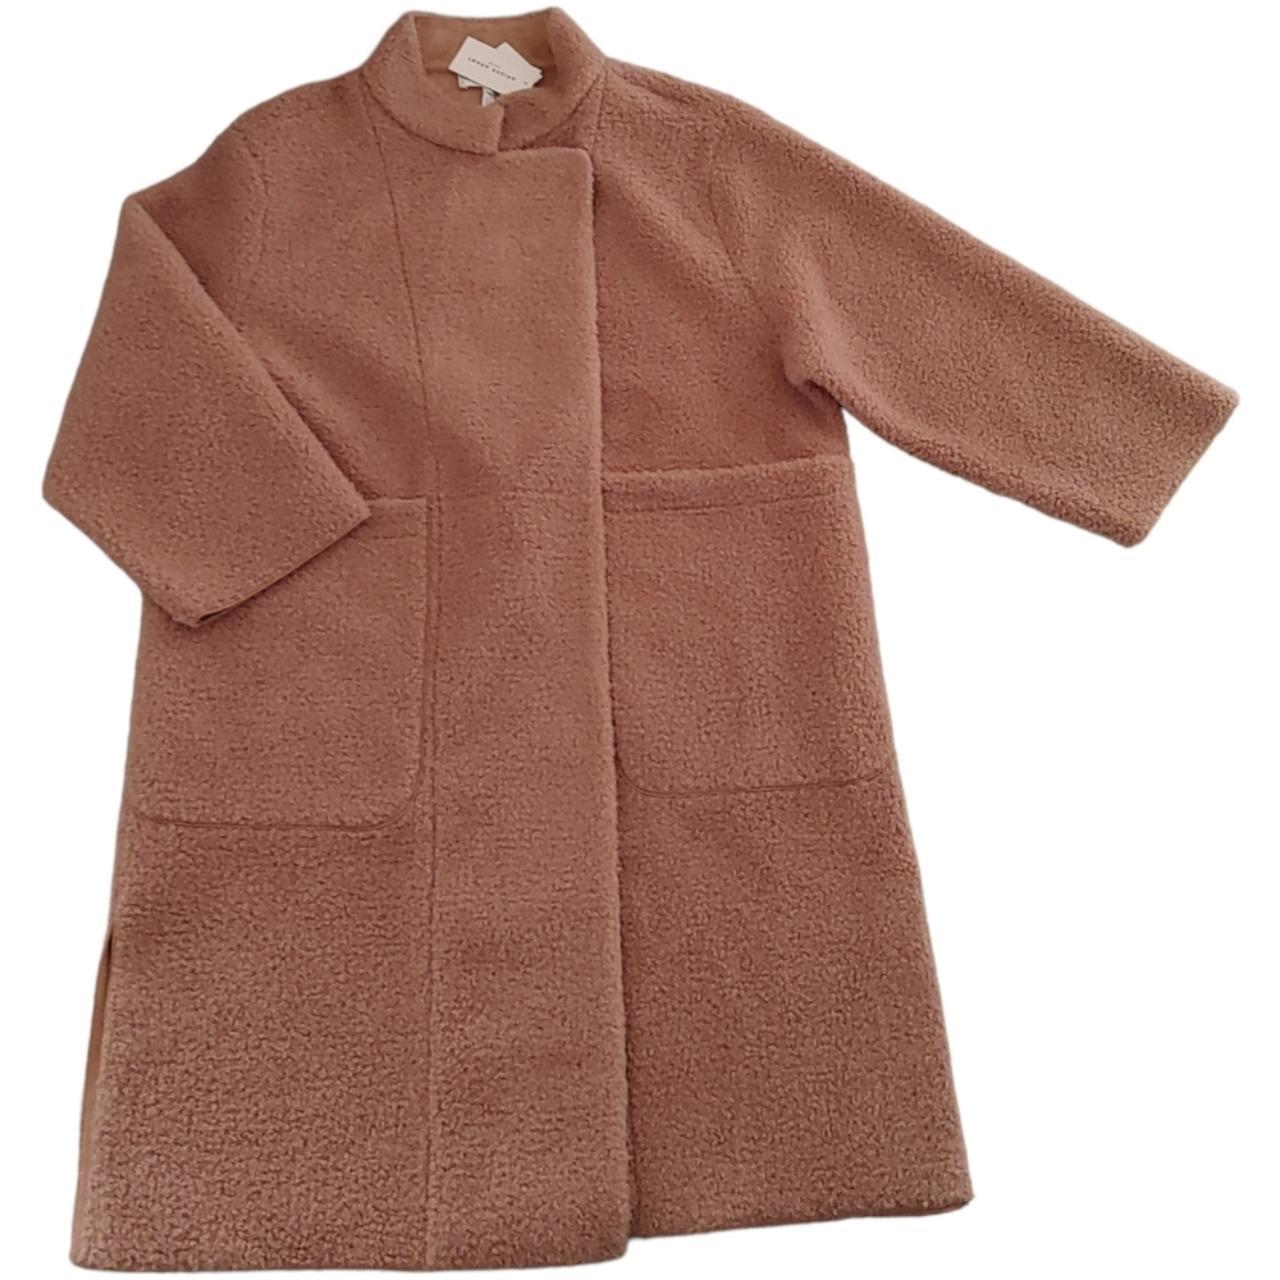 Apiece Apart Women's Brown and Tan Coat